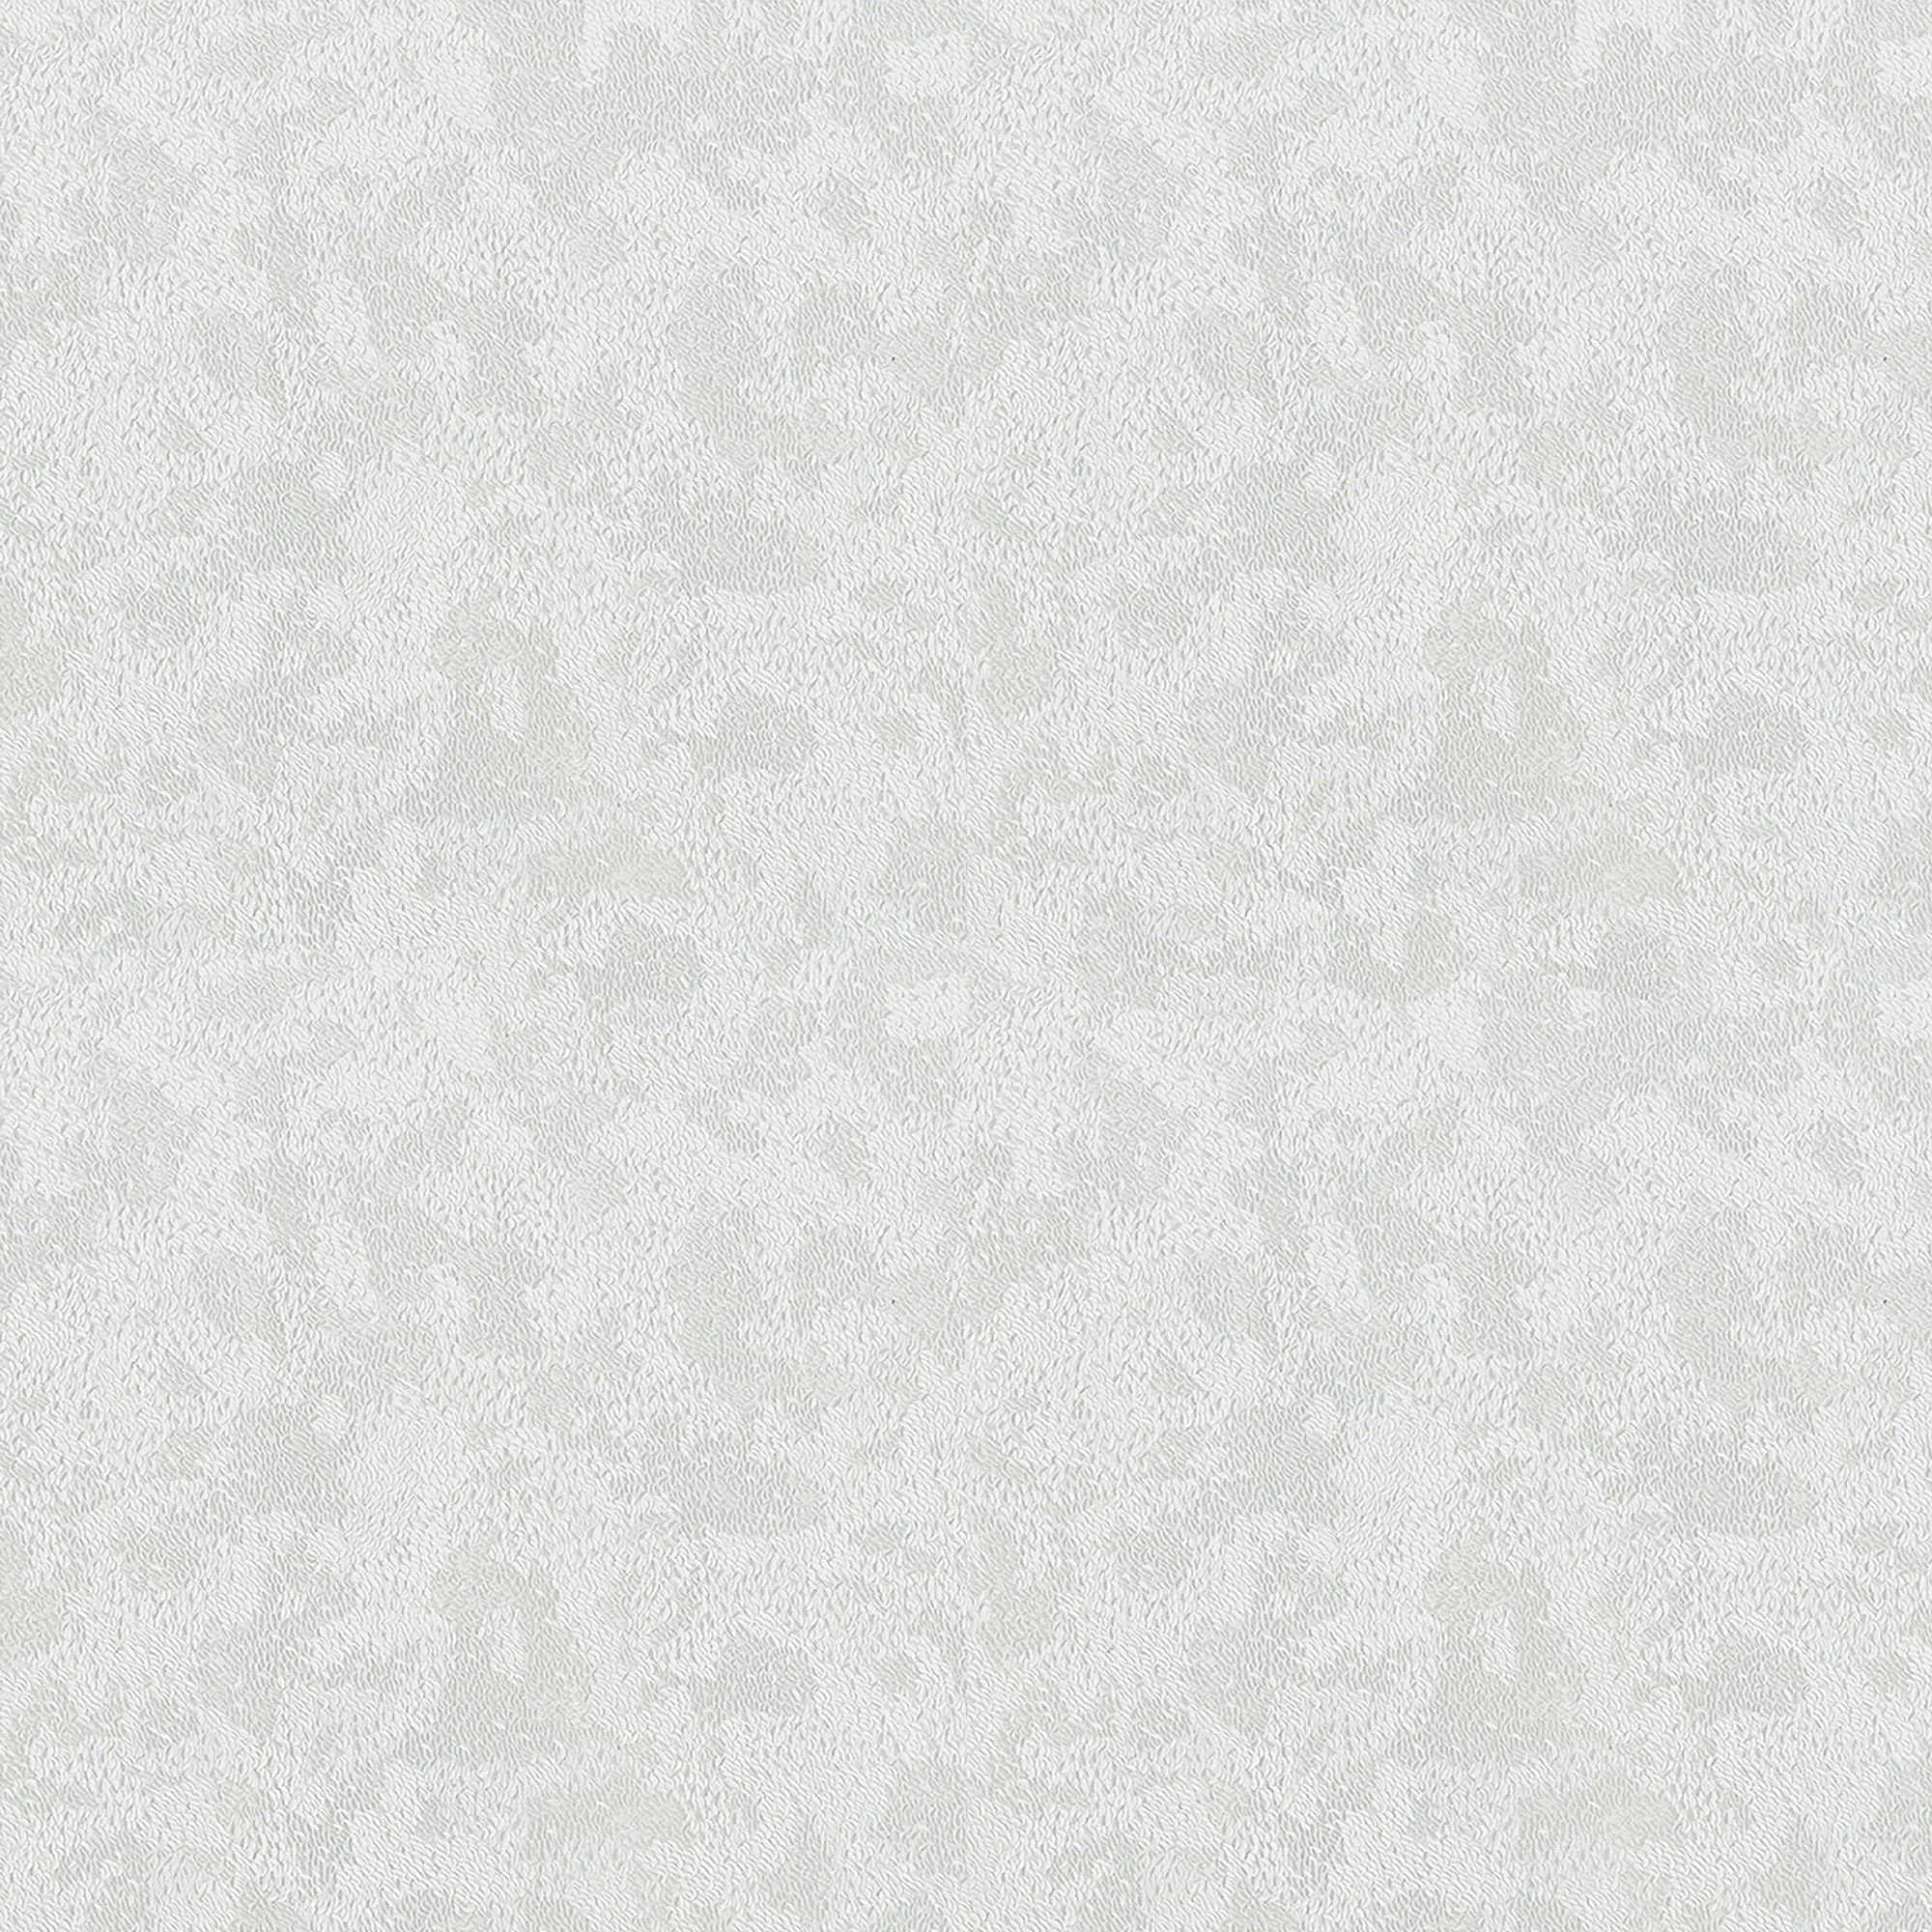 Holden Décor White Sequin Embossed Wallpaper